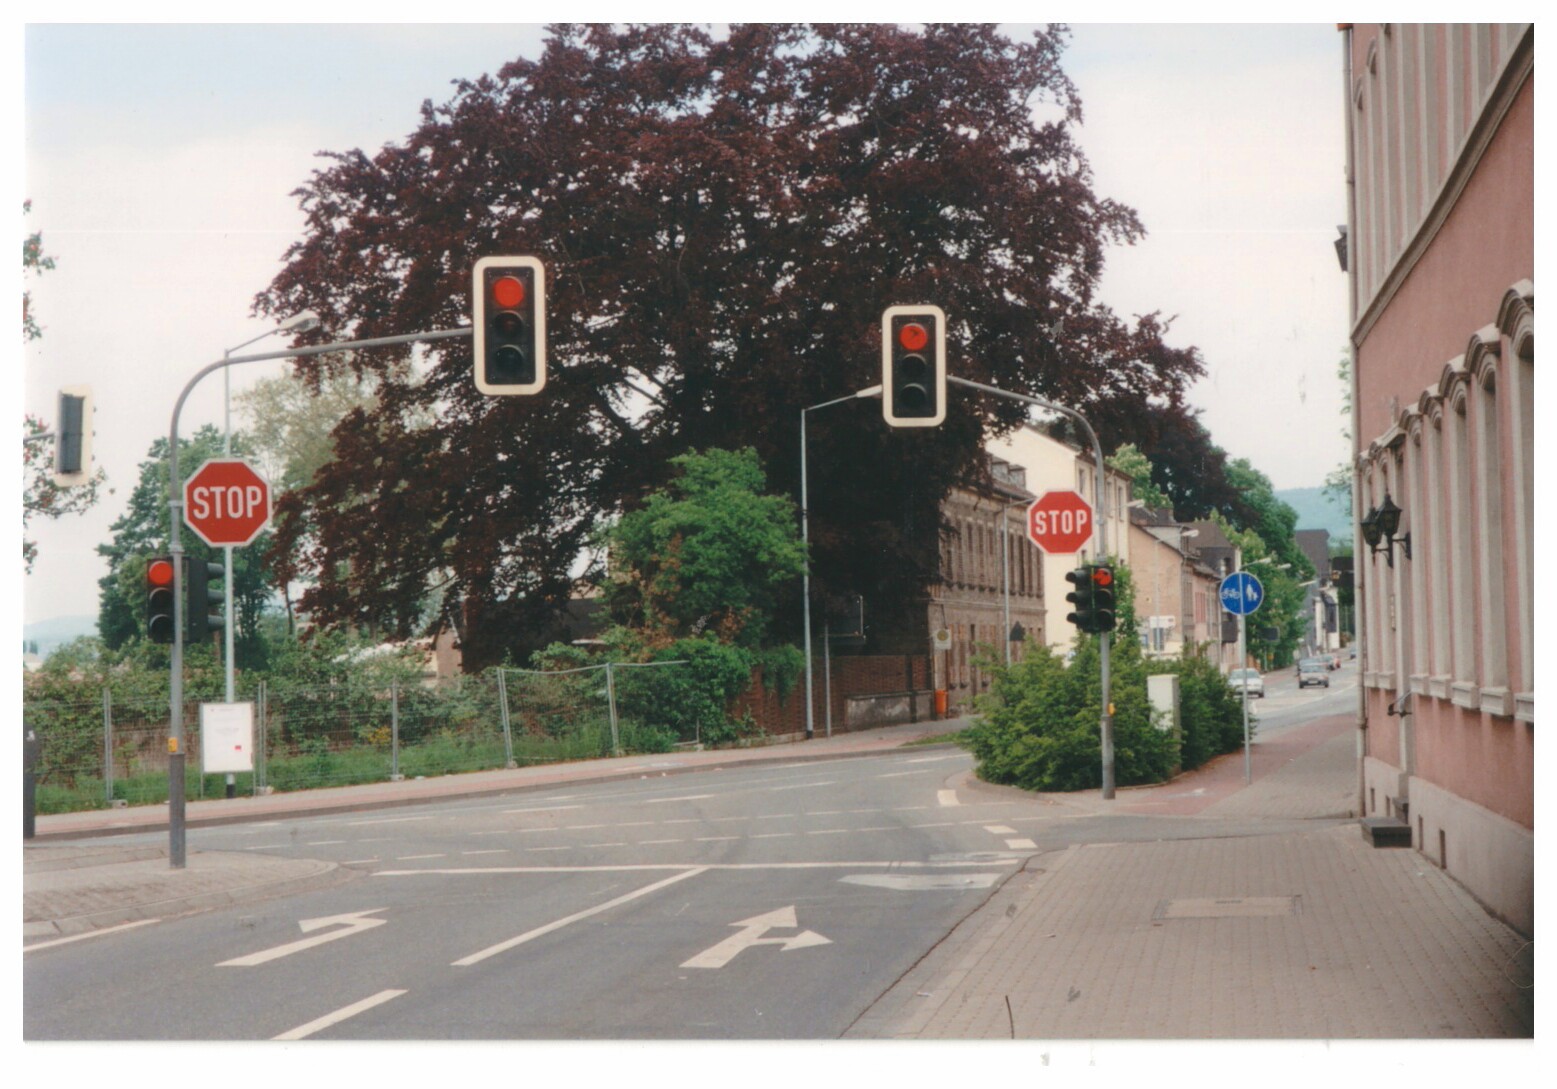 Kreuzung vor dem Werksgelände Didier vor dem Abriss 1998/99, Bendorf (Stiftung Sayner Hütte, Rheinisches Eisenkunstguss-Museum CC BY-NC-SA)